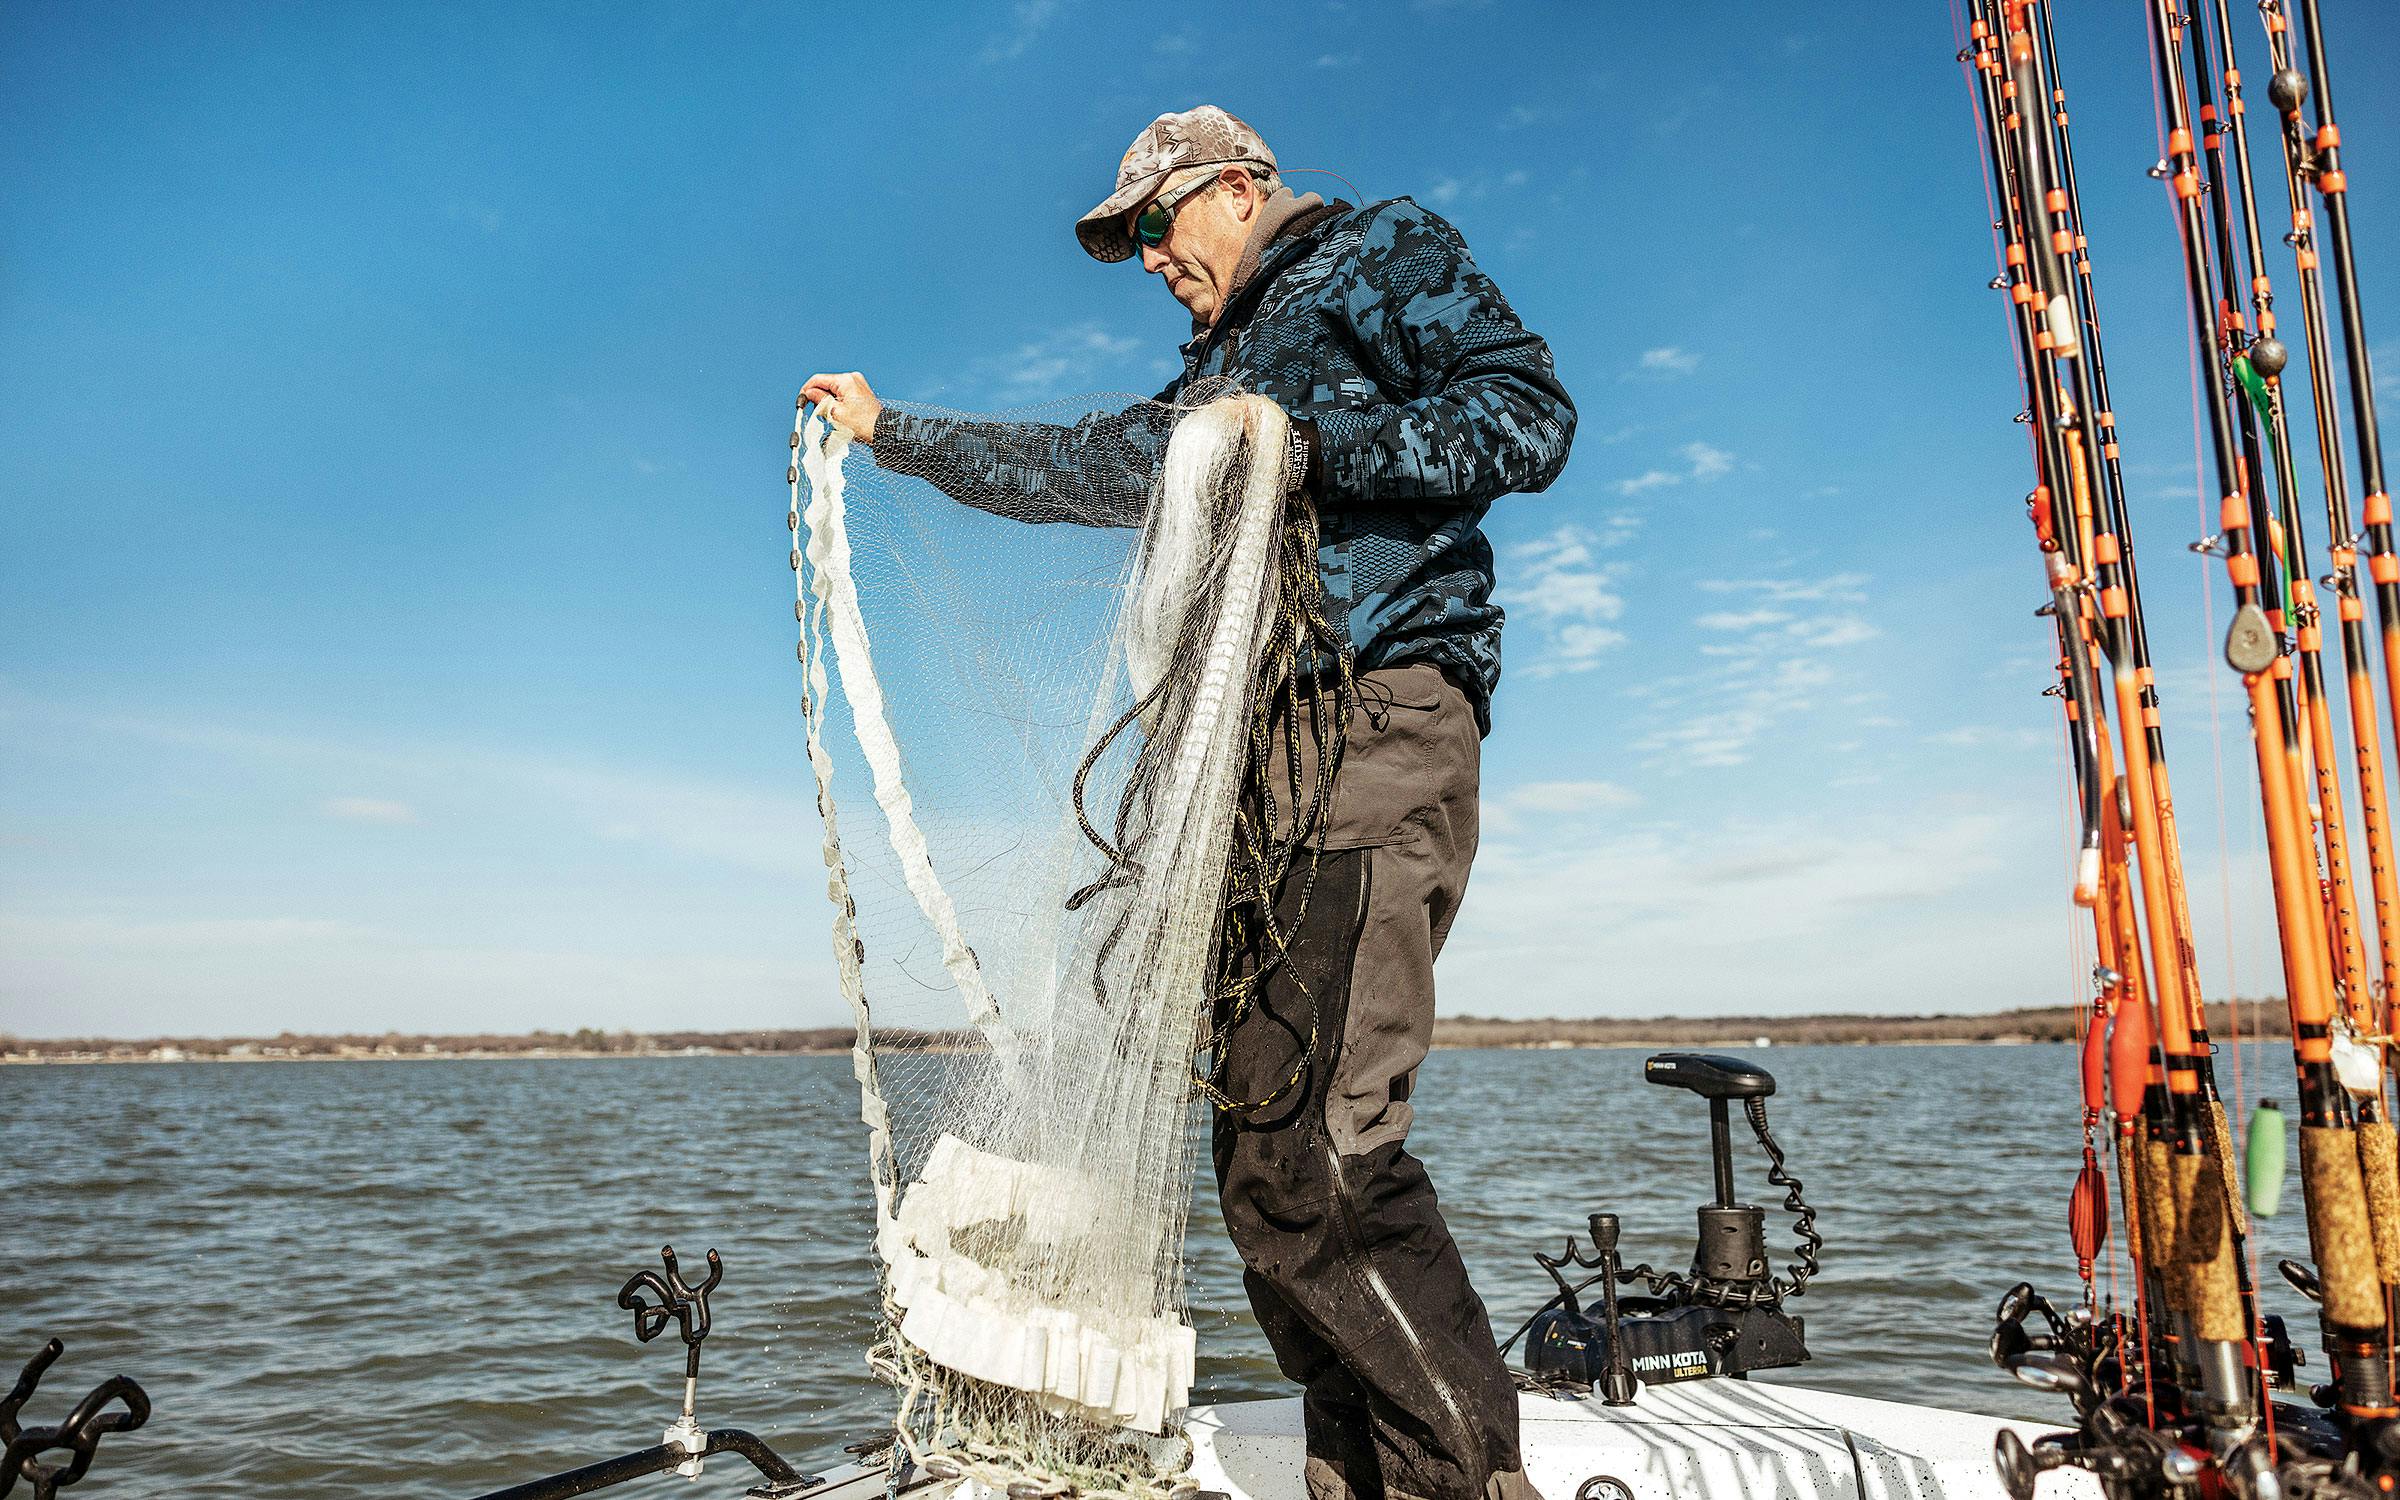 Catfish hitting in summer haunts - Texas Hunting & Fishing